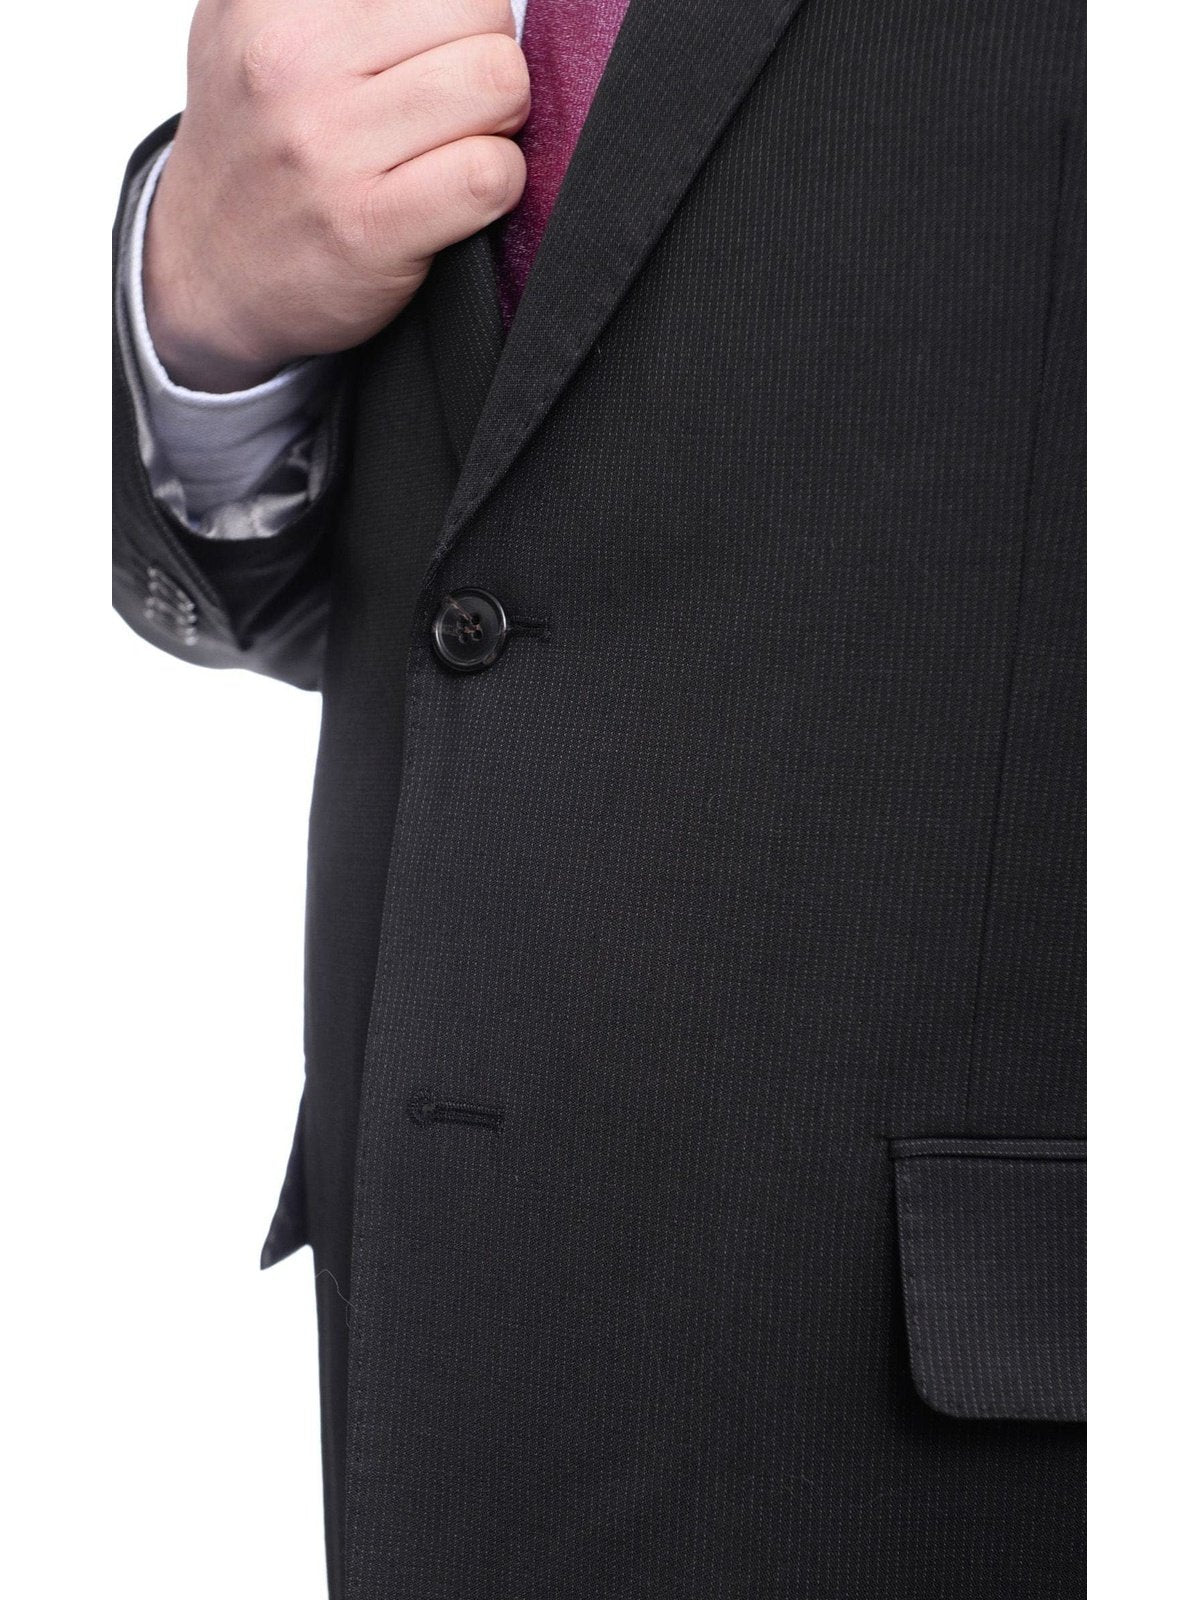 Arthur Black TWO PIECE SUITS Men's Arthur Black Executive Portly Fit Black Pinstriped 2 Button Wool Suit